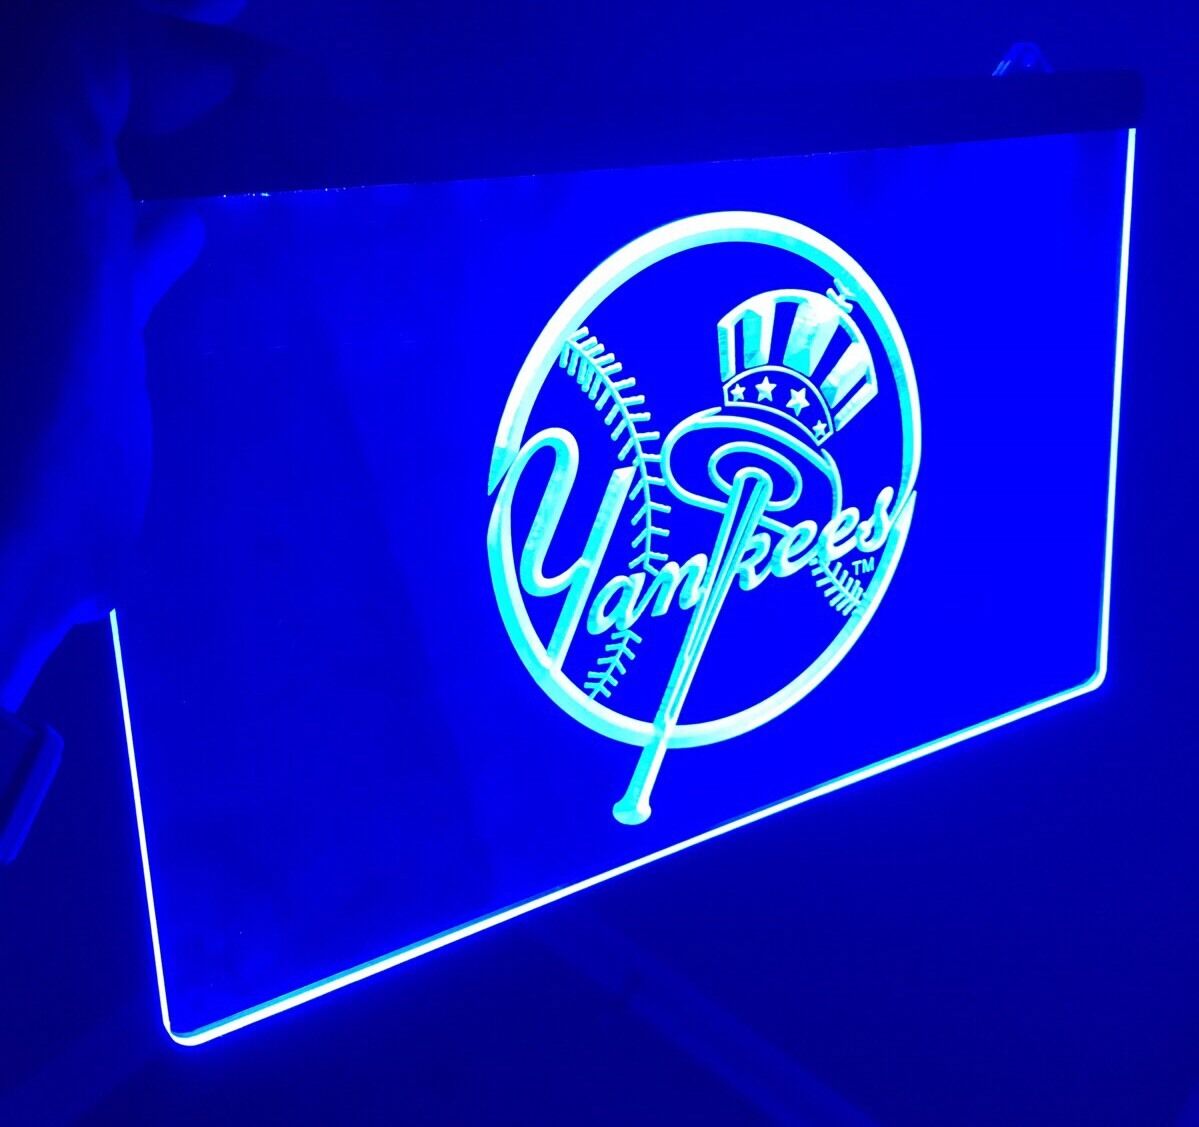 MLB NEW YORK YANKEES LOGO LED Light Sign for Game Room,Office,Bar,Man Cave.